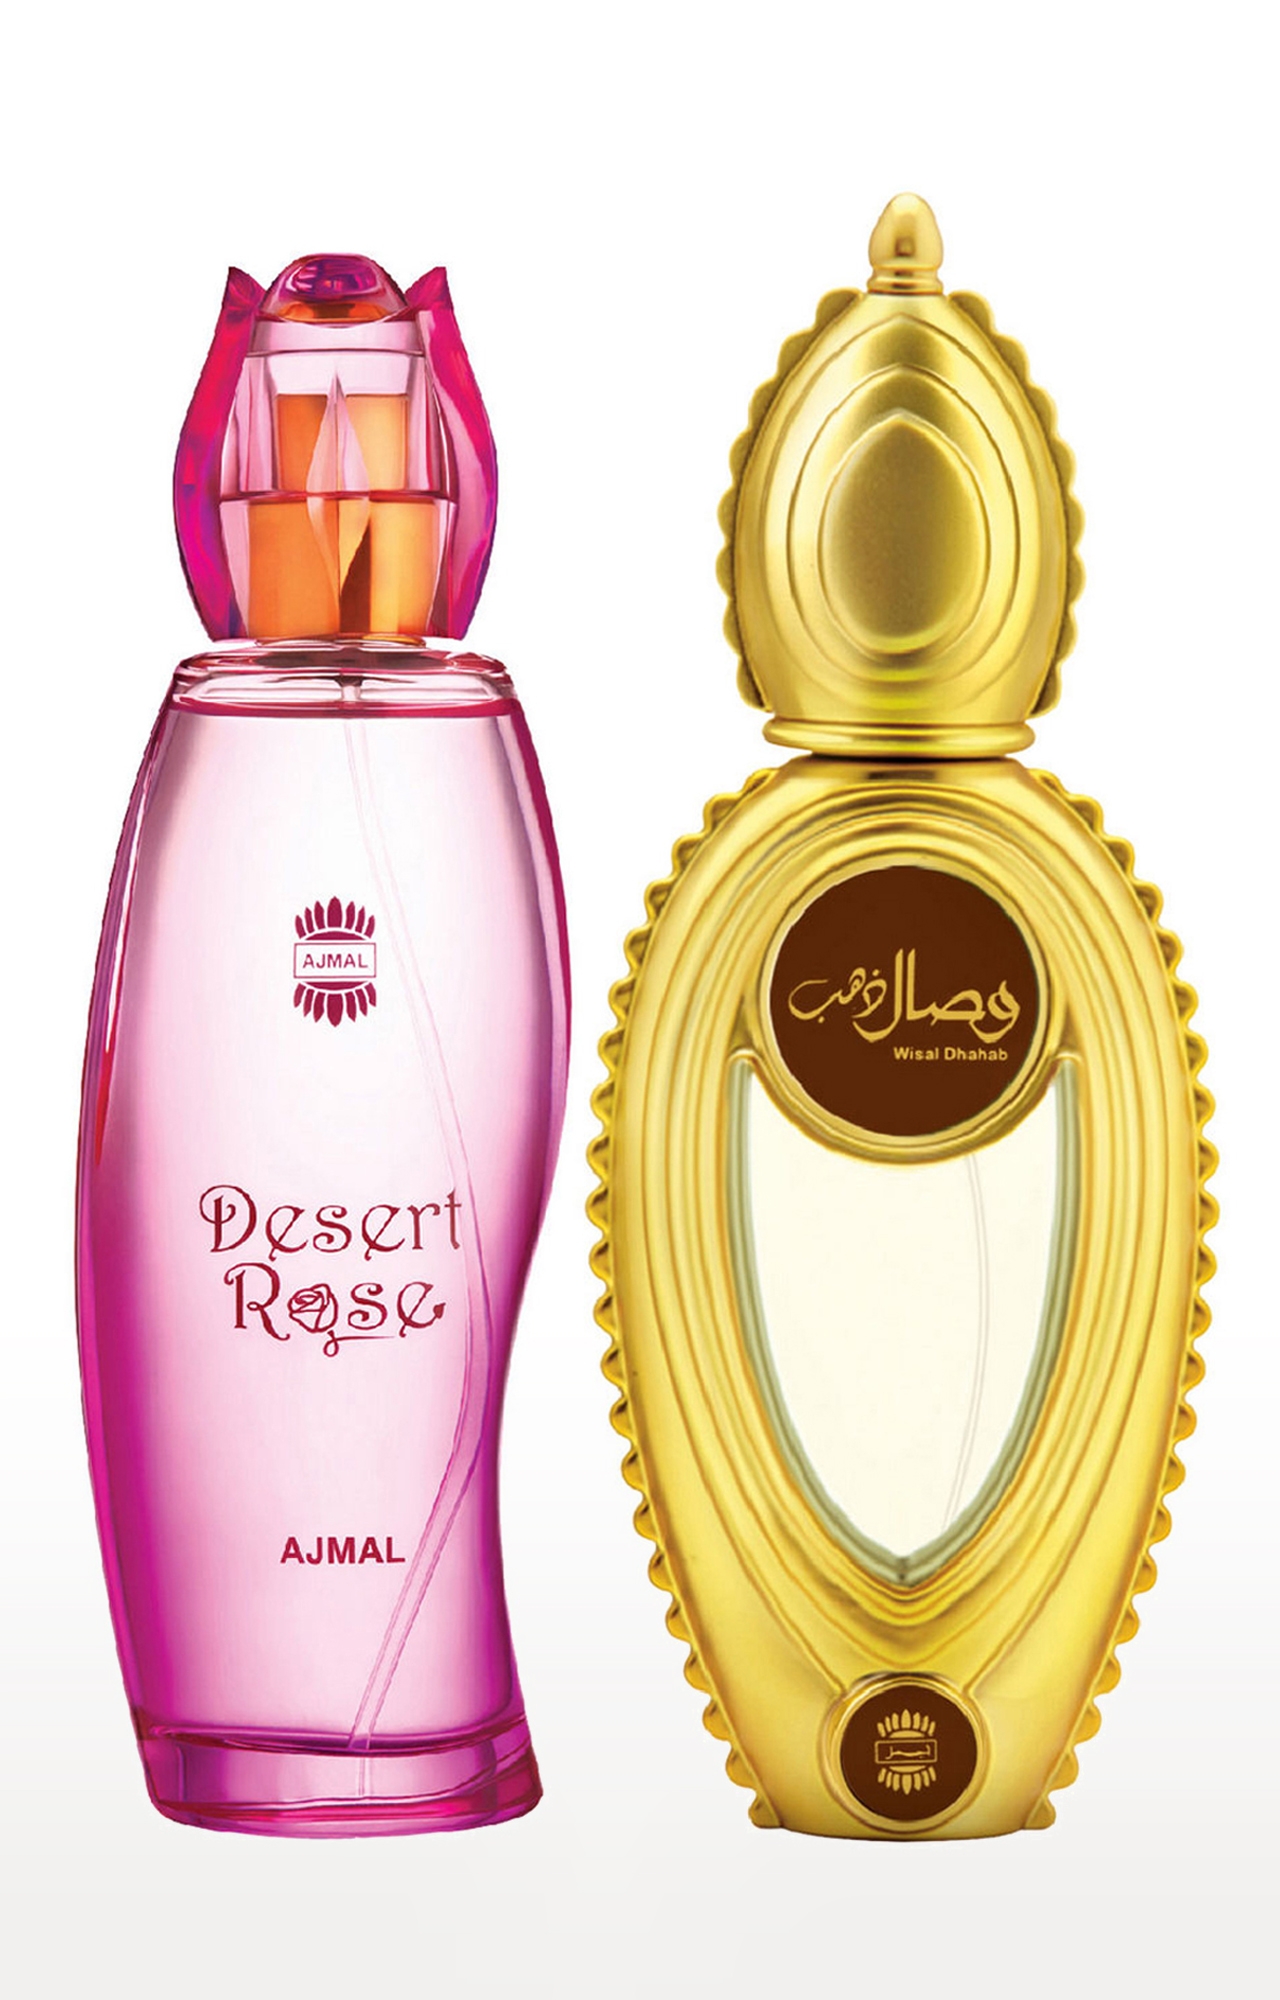 Ajmal Desert Rose EDP Oriental Perfume 100ml for Women and Wisal Dhahab EDP Fruity Perfume 50ml for Men